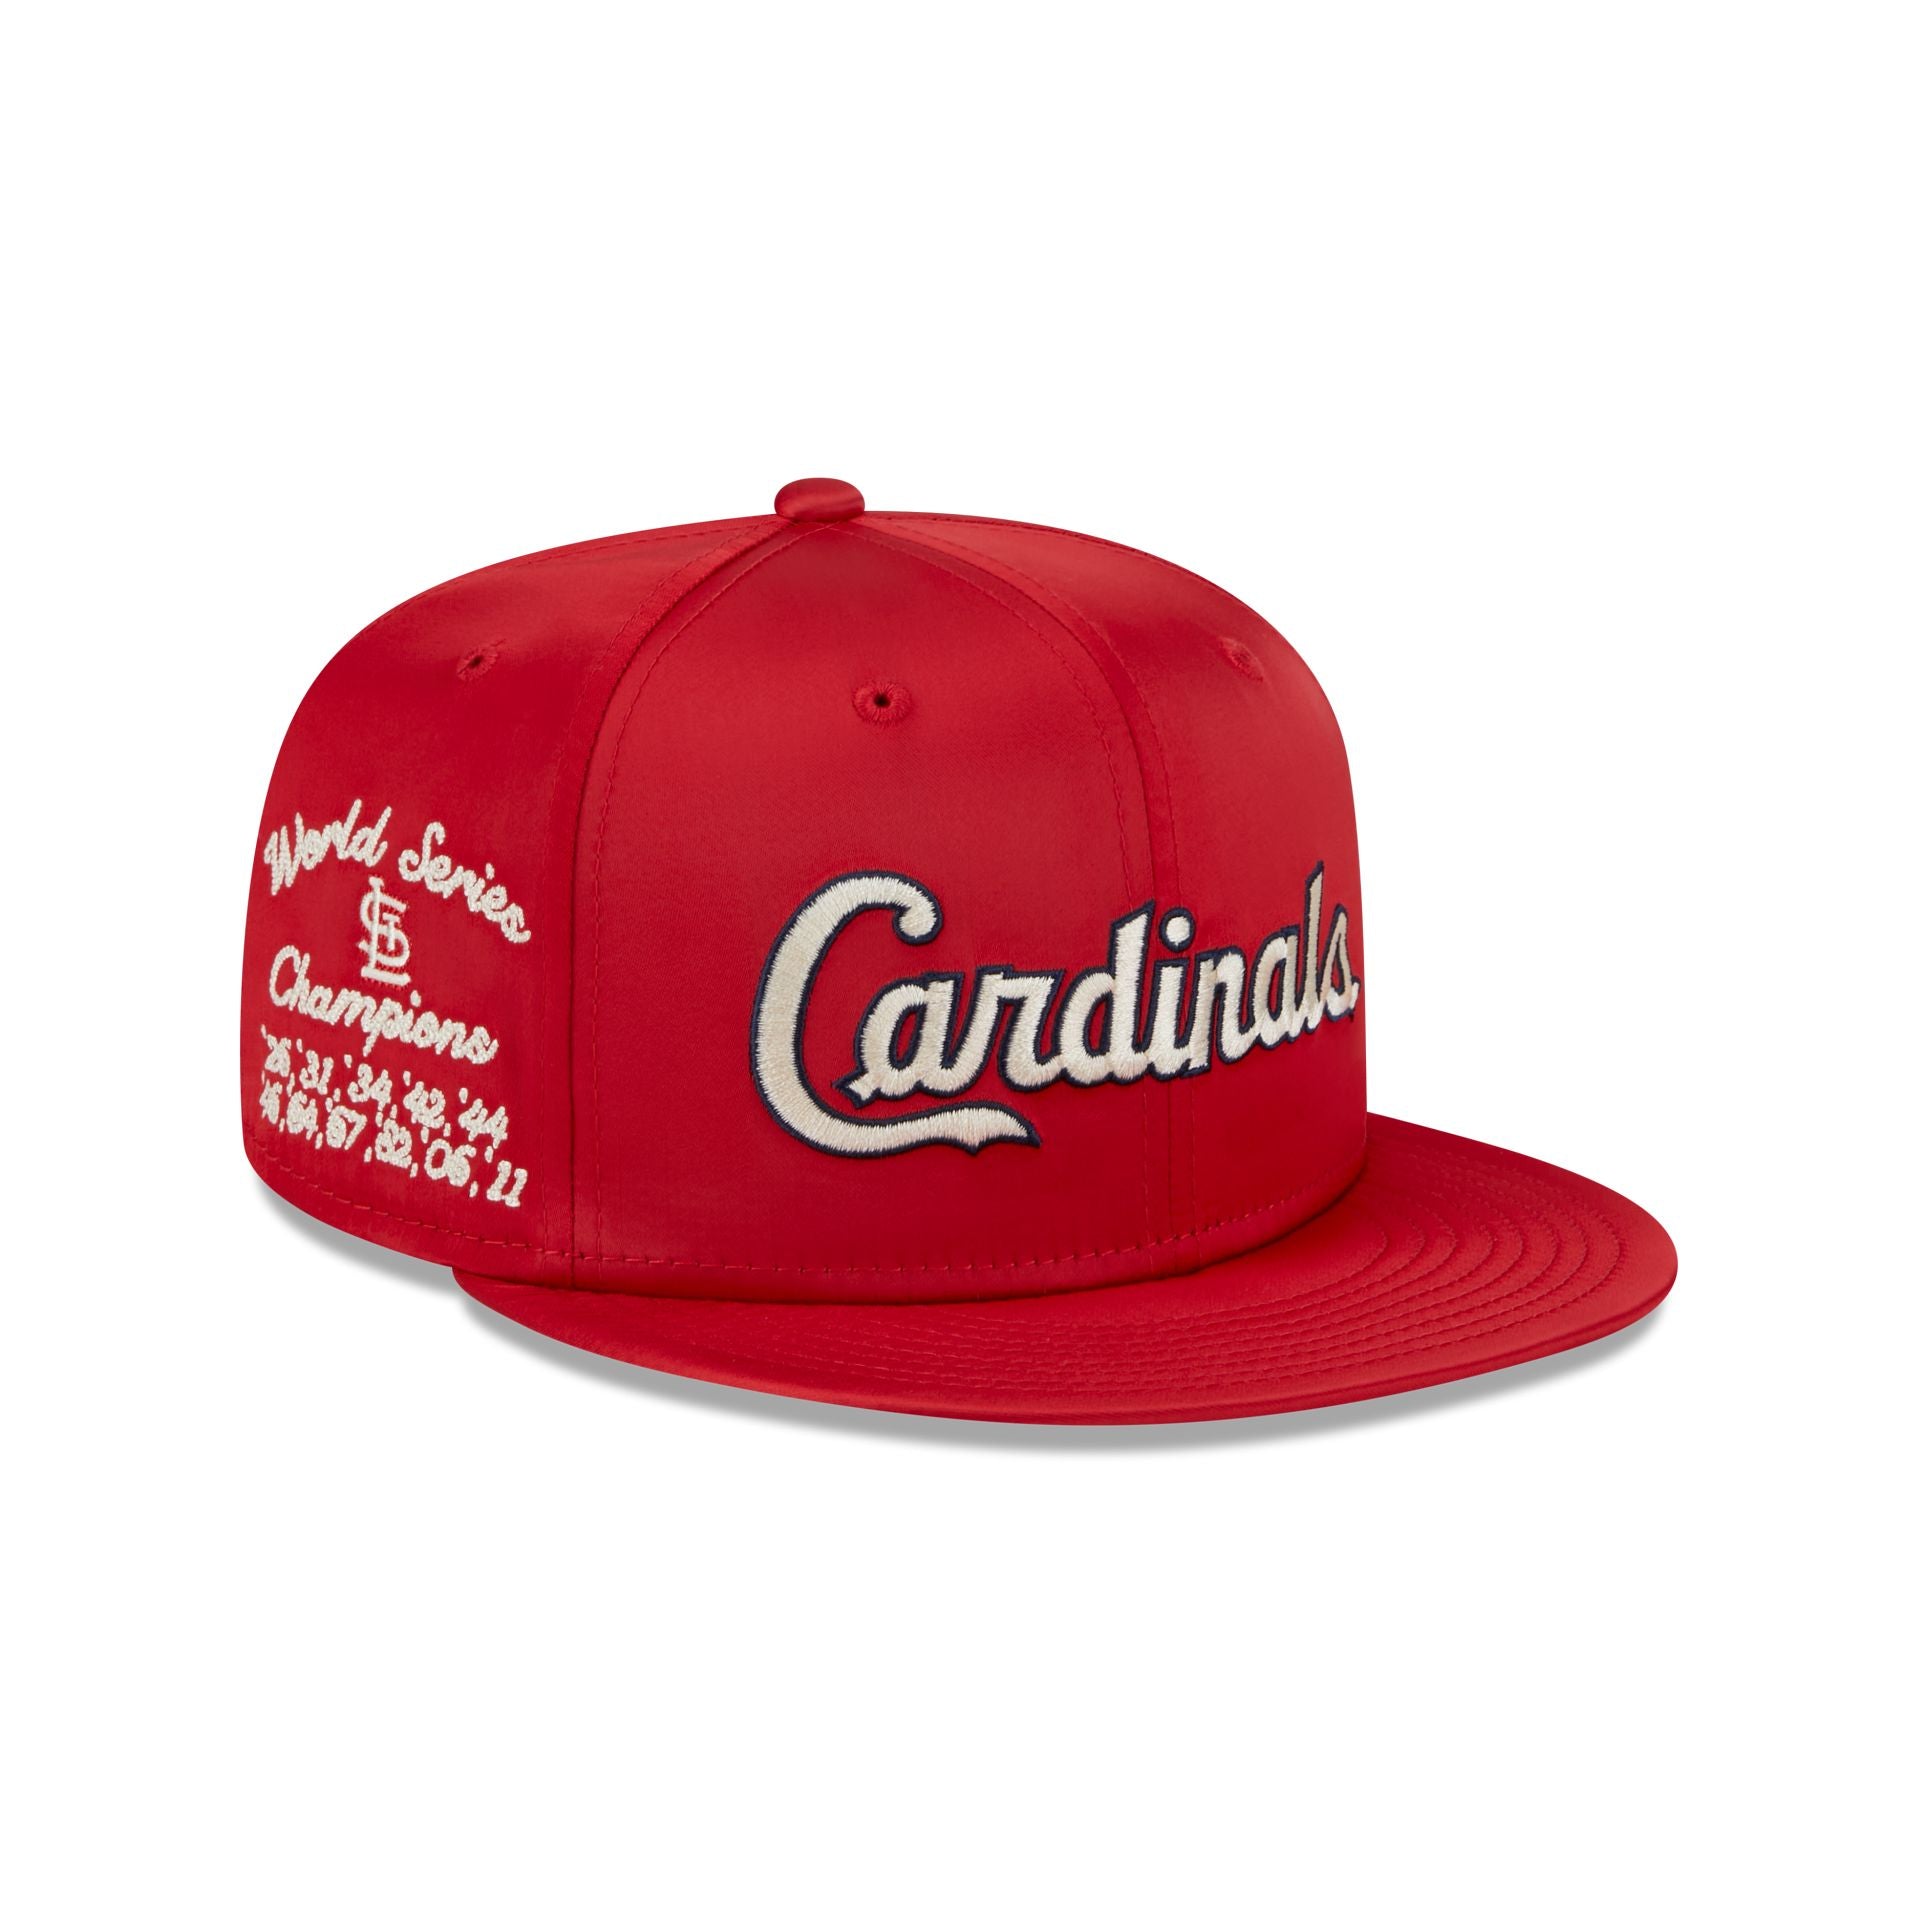 Retro cardinal batting logo  St louis cardinals baseball, St louis baseball,  Baseball teams logo